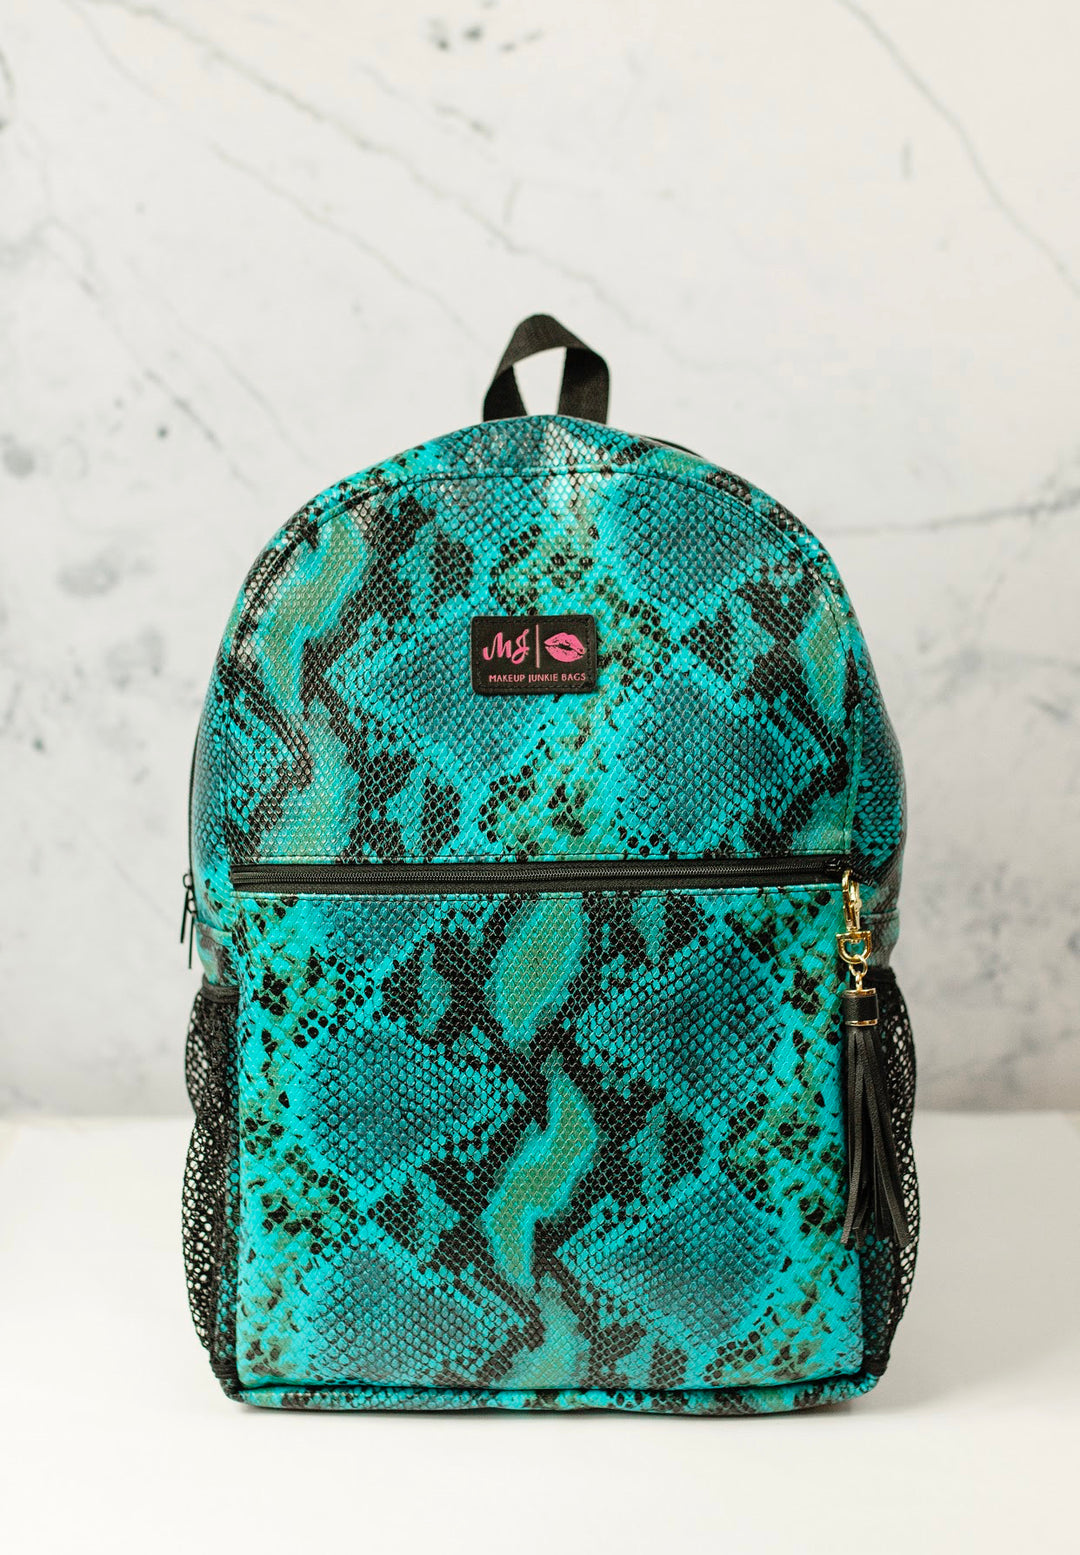 Makeup Junkie Bags - Aqua Viper Backpack [Pre-Order]